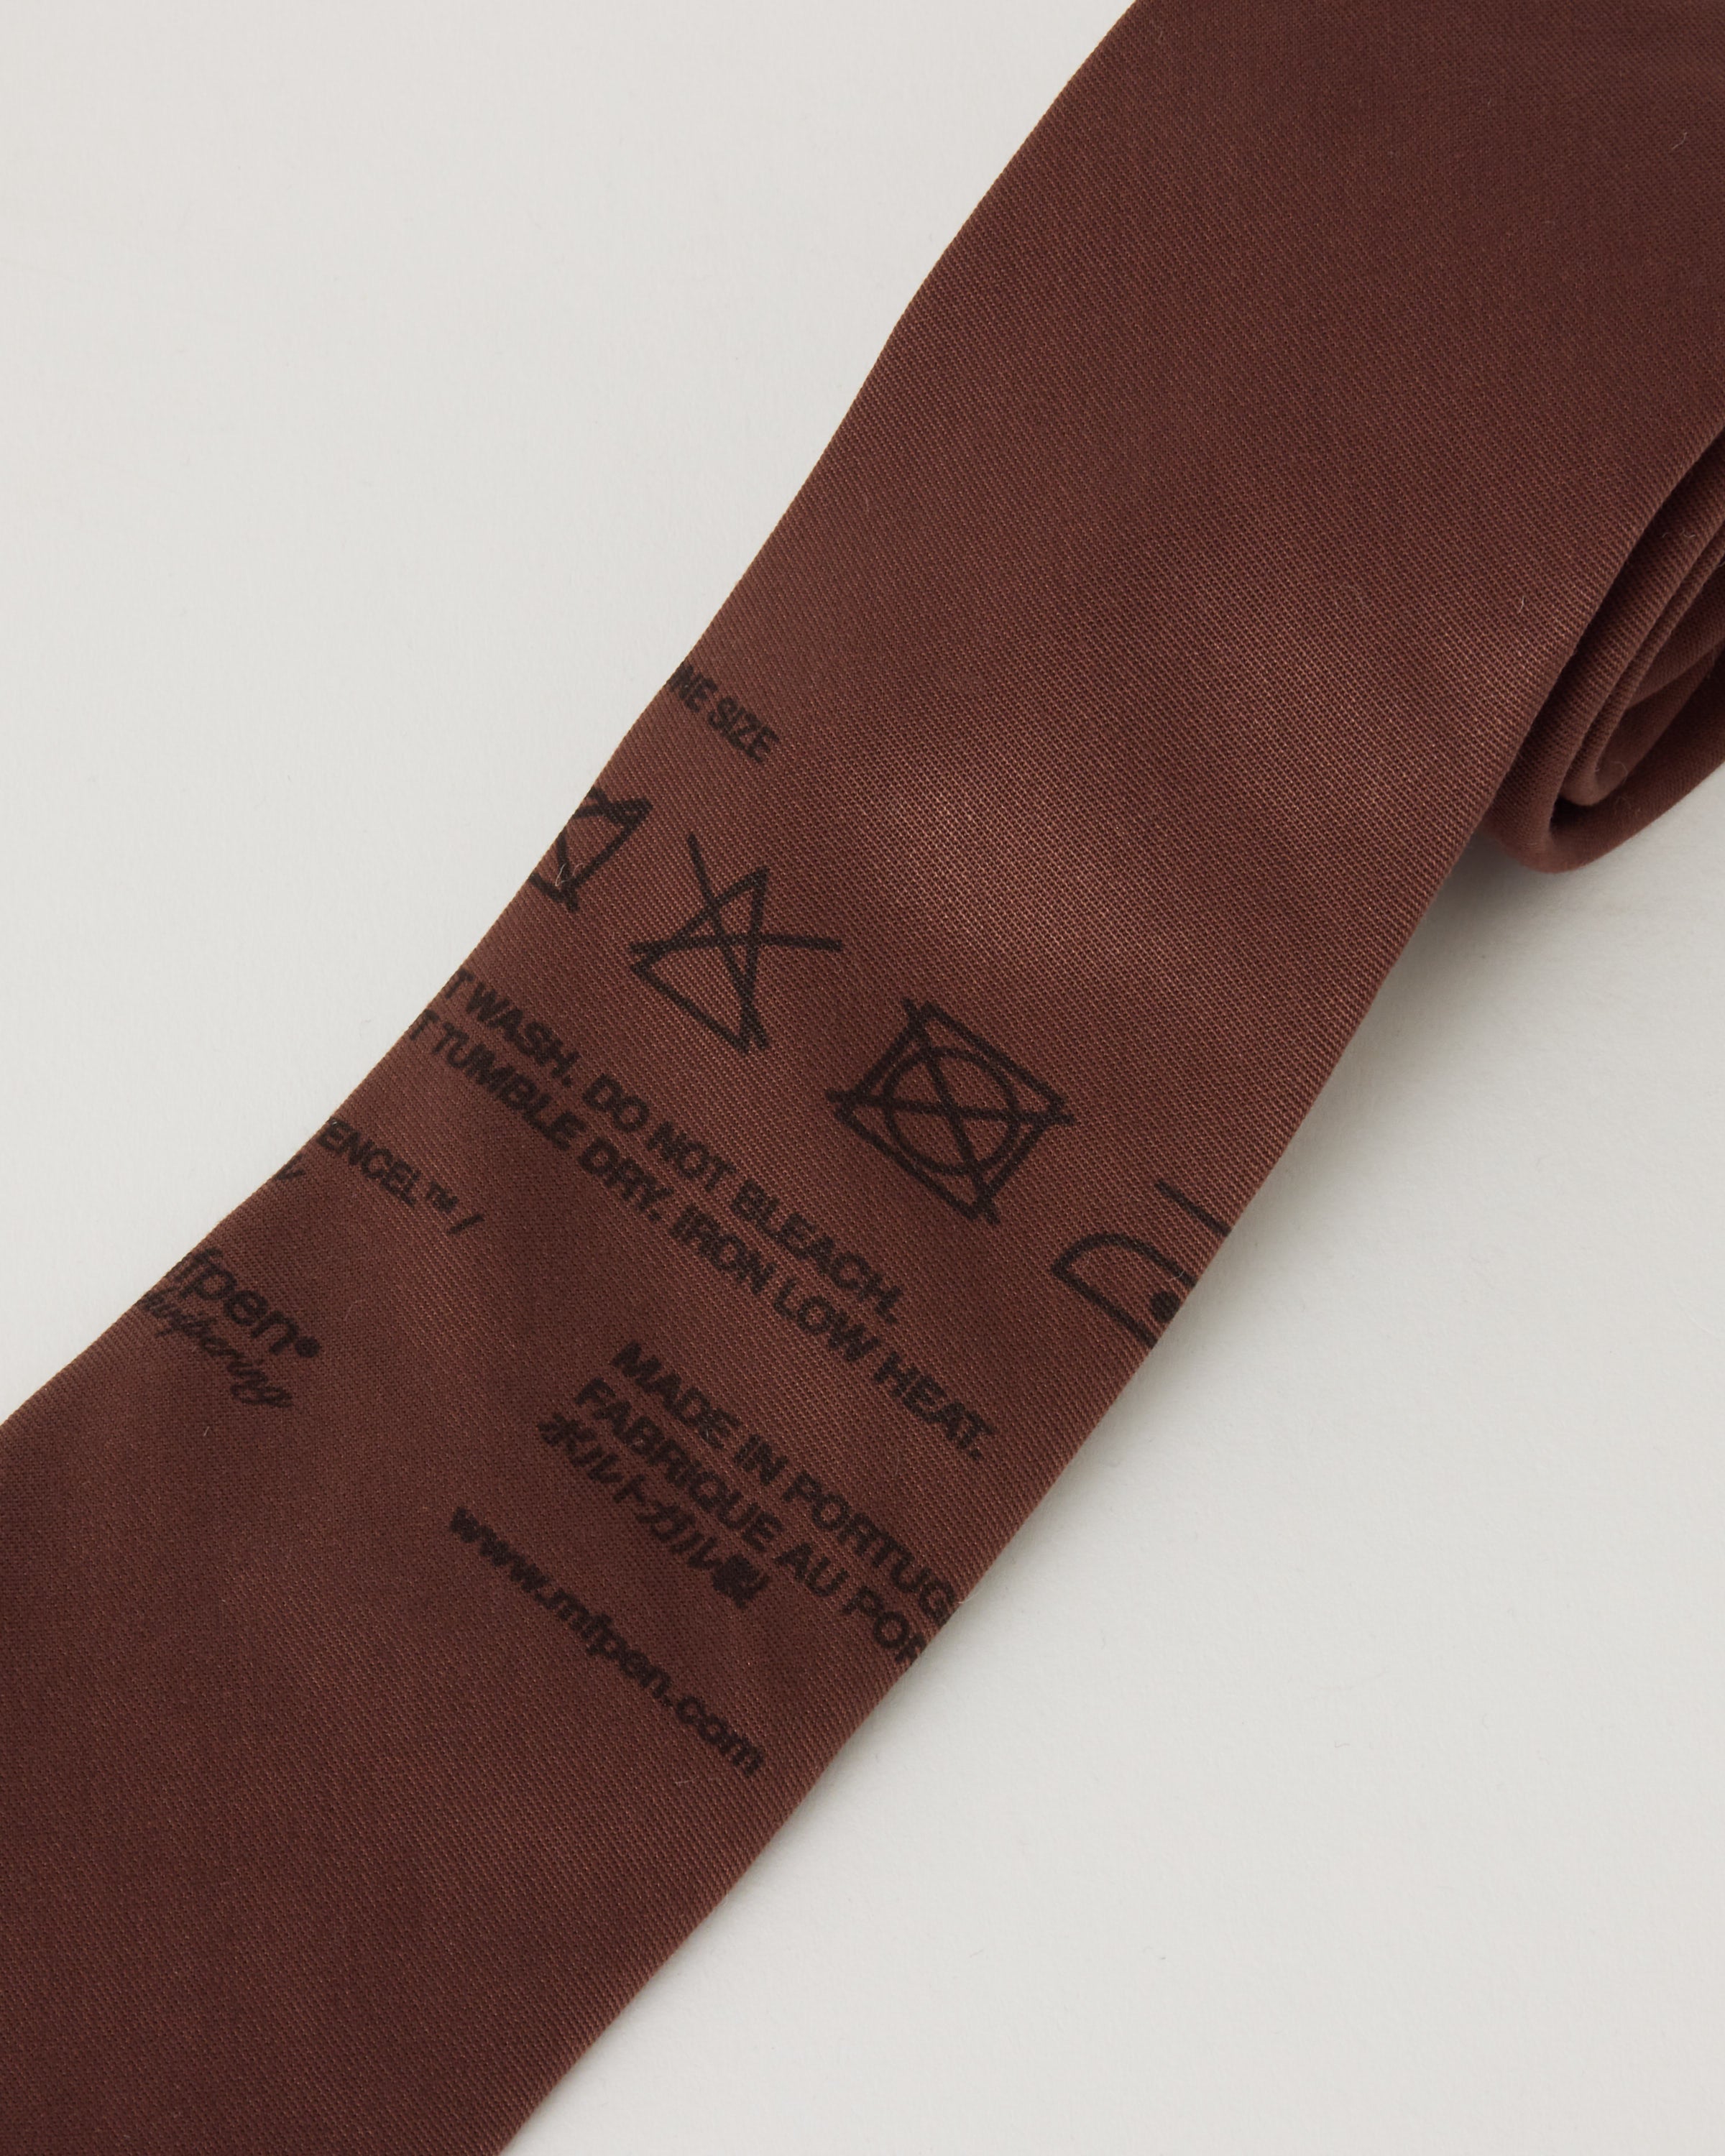 Louis Vuitton Prism Shape Belt w/ Tags - Size US 40